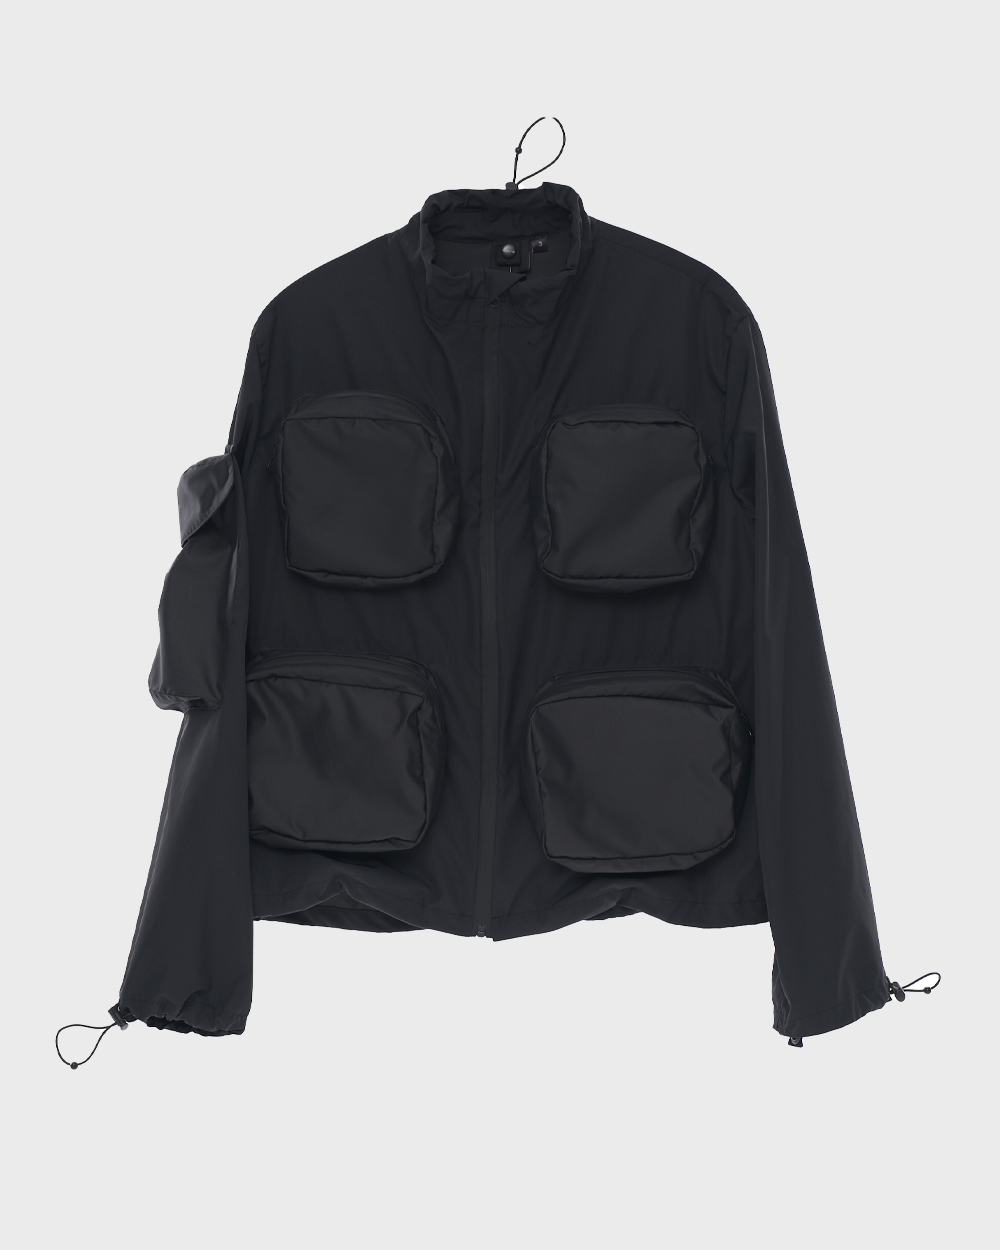 Multi Pocket Jacket (Black)